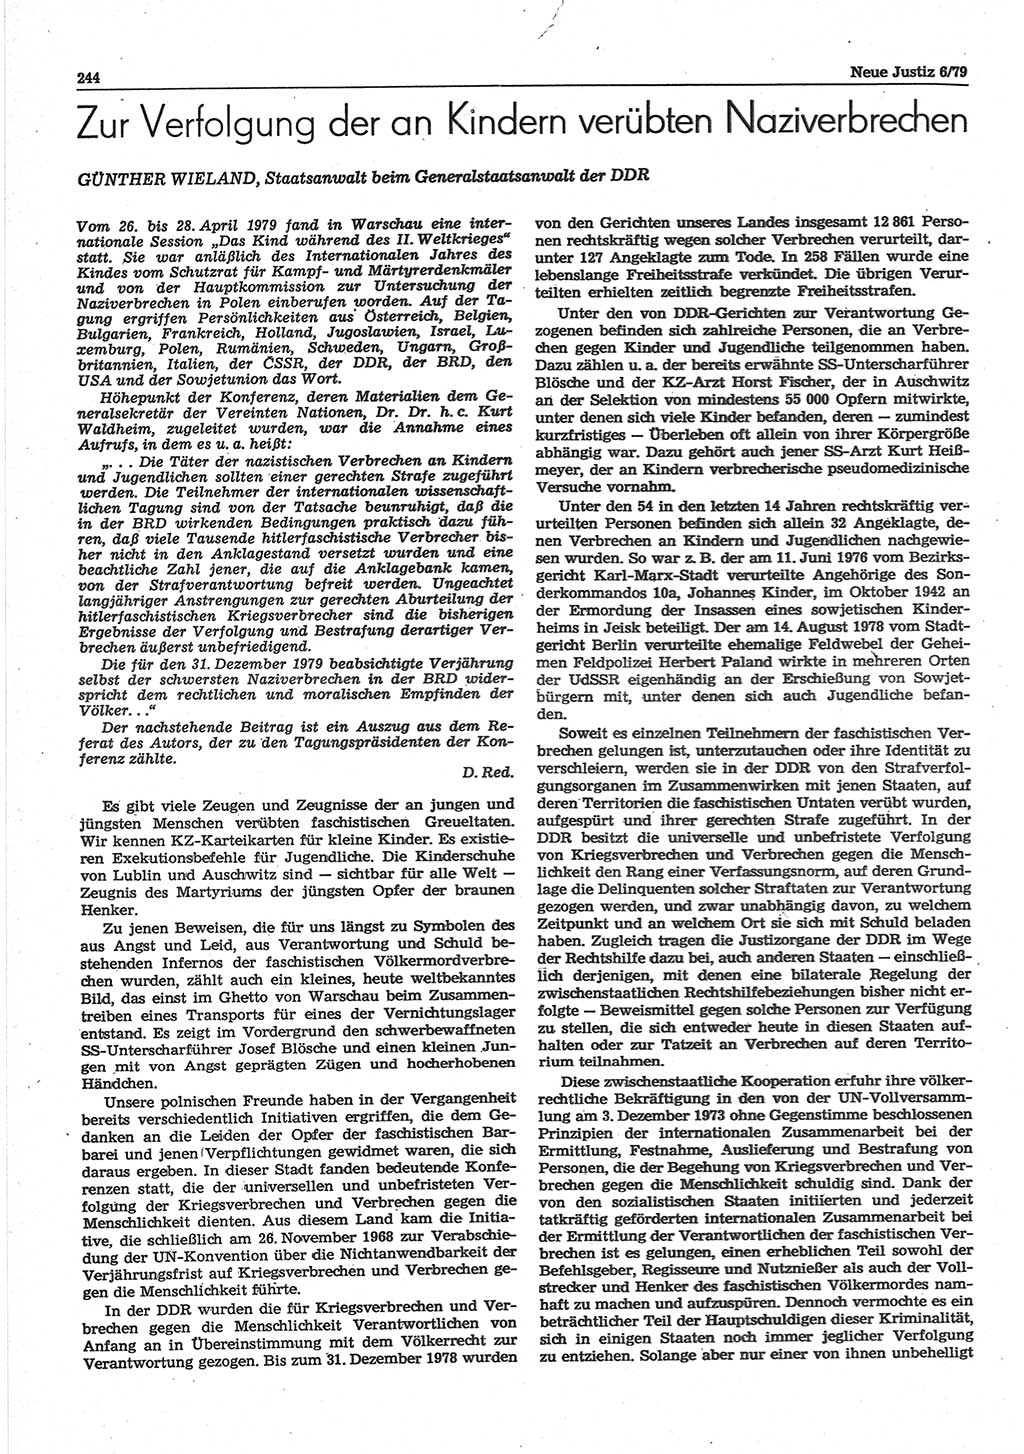 Neue Justiz (NJ), Zeitschrift für sozialistisches Recht und Gesetzlichkeit [Deutsche Demokratische Republik (DDR)], 33. Jahrgang 1979, Seite 244 (NJ DDR 1979, S. 244)